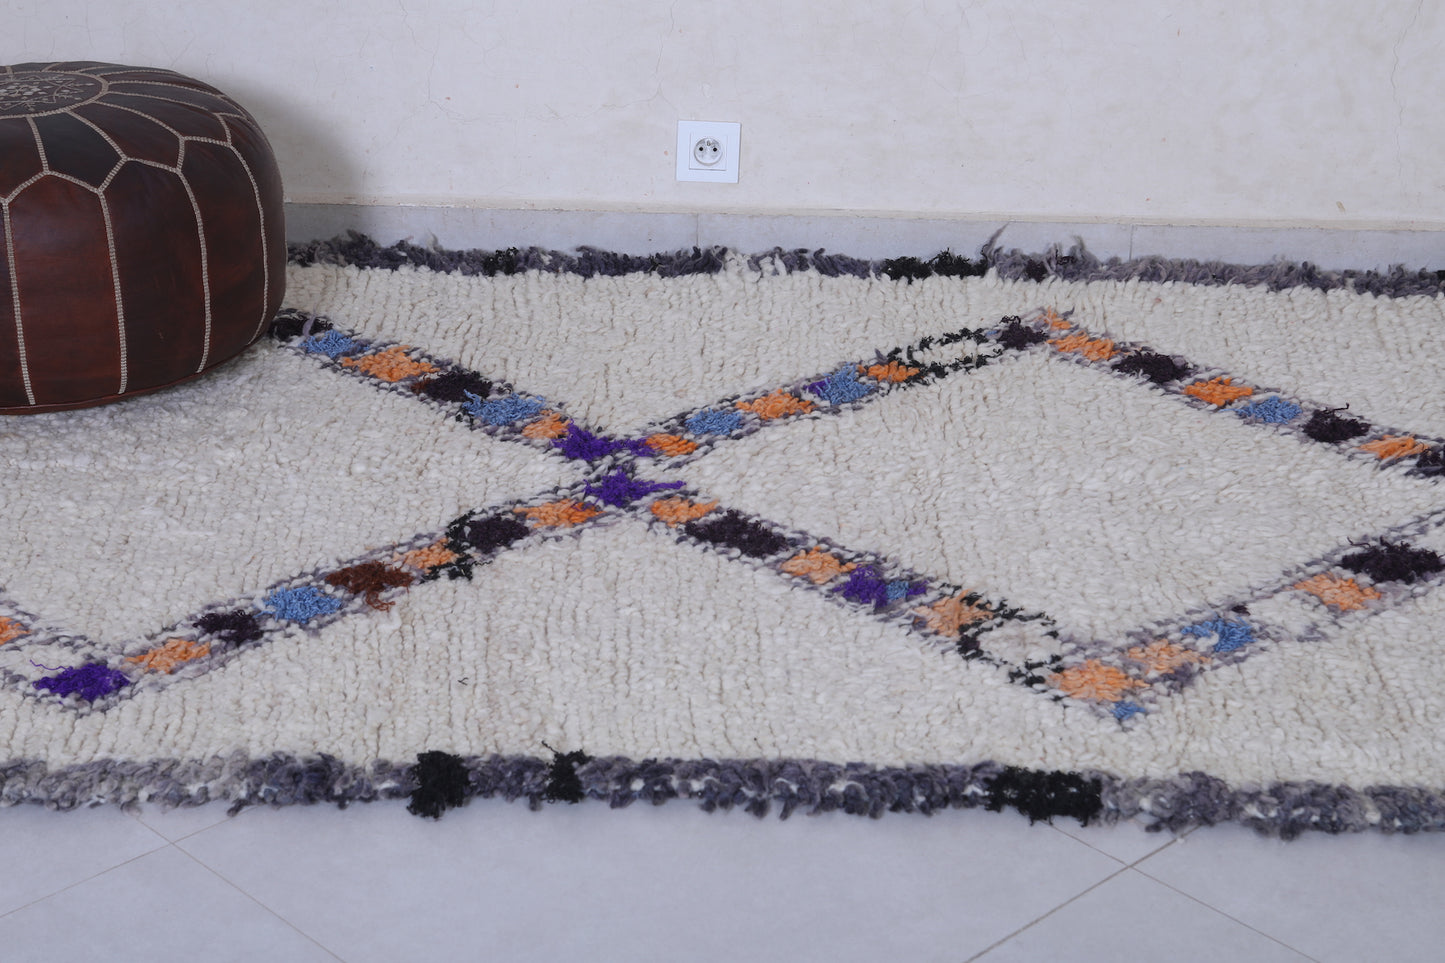 Moroccan rug 4.5 X 9.5 Feet